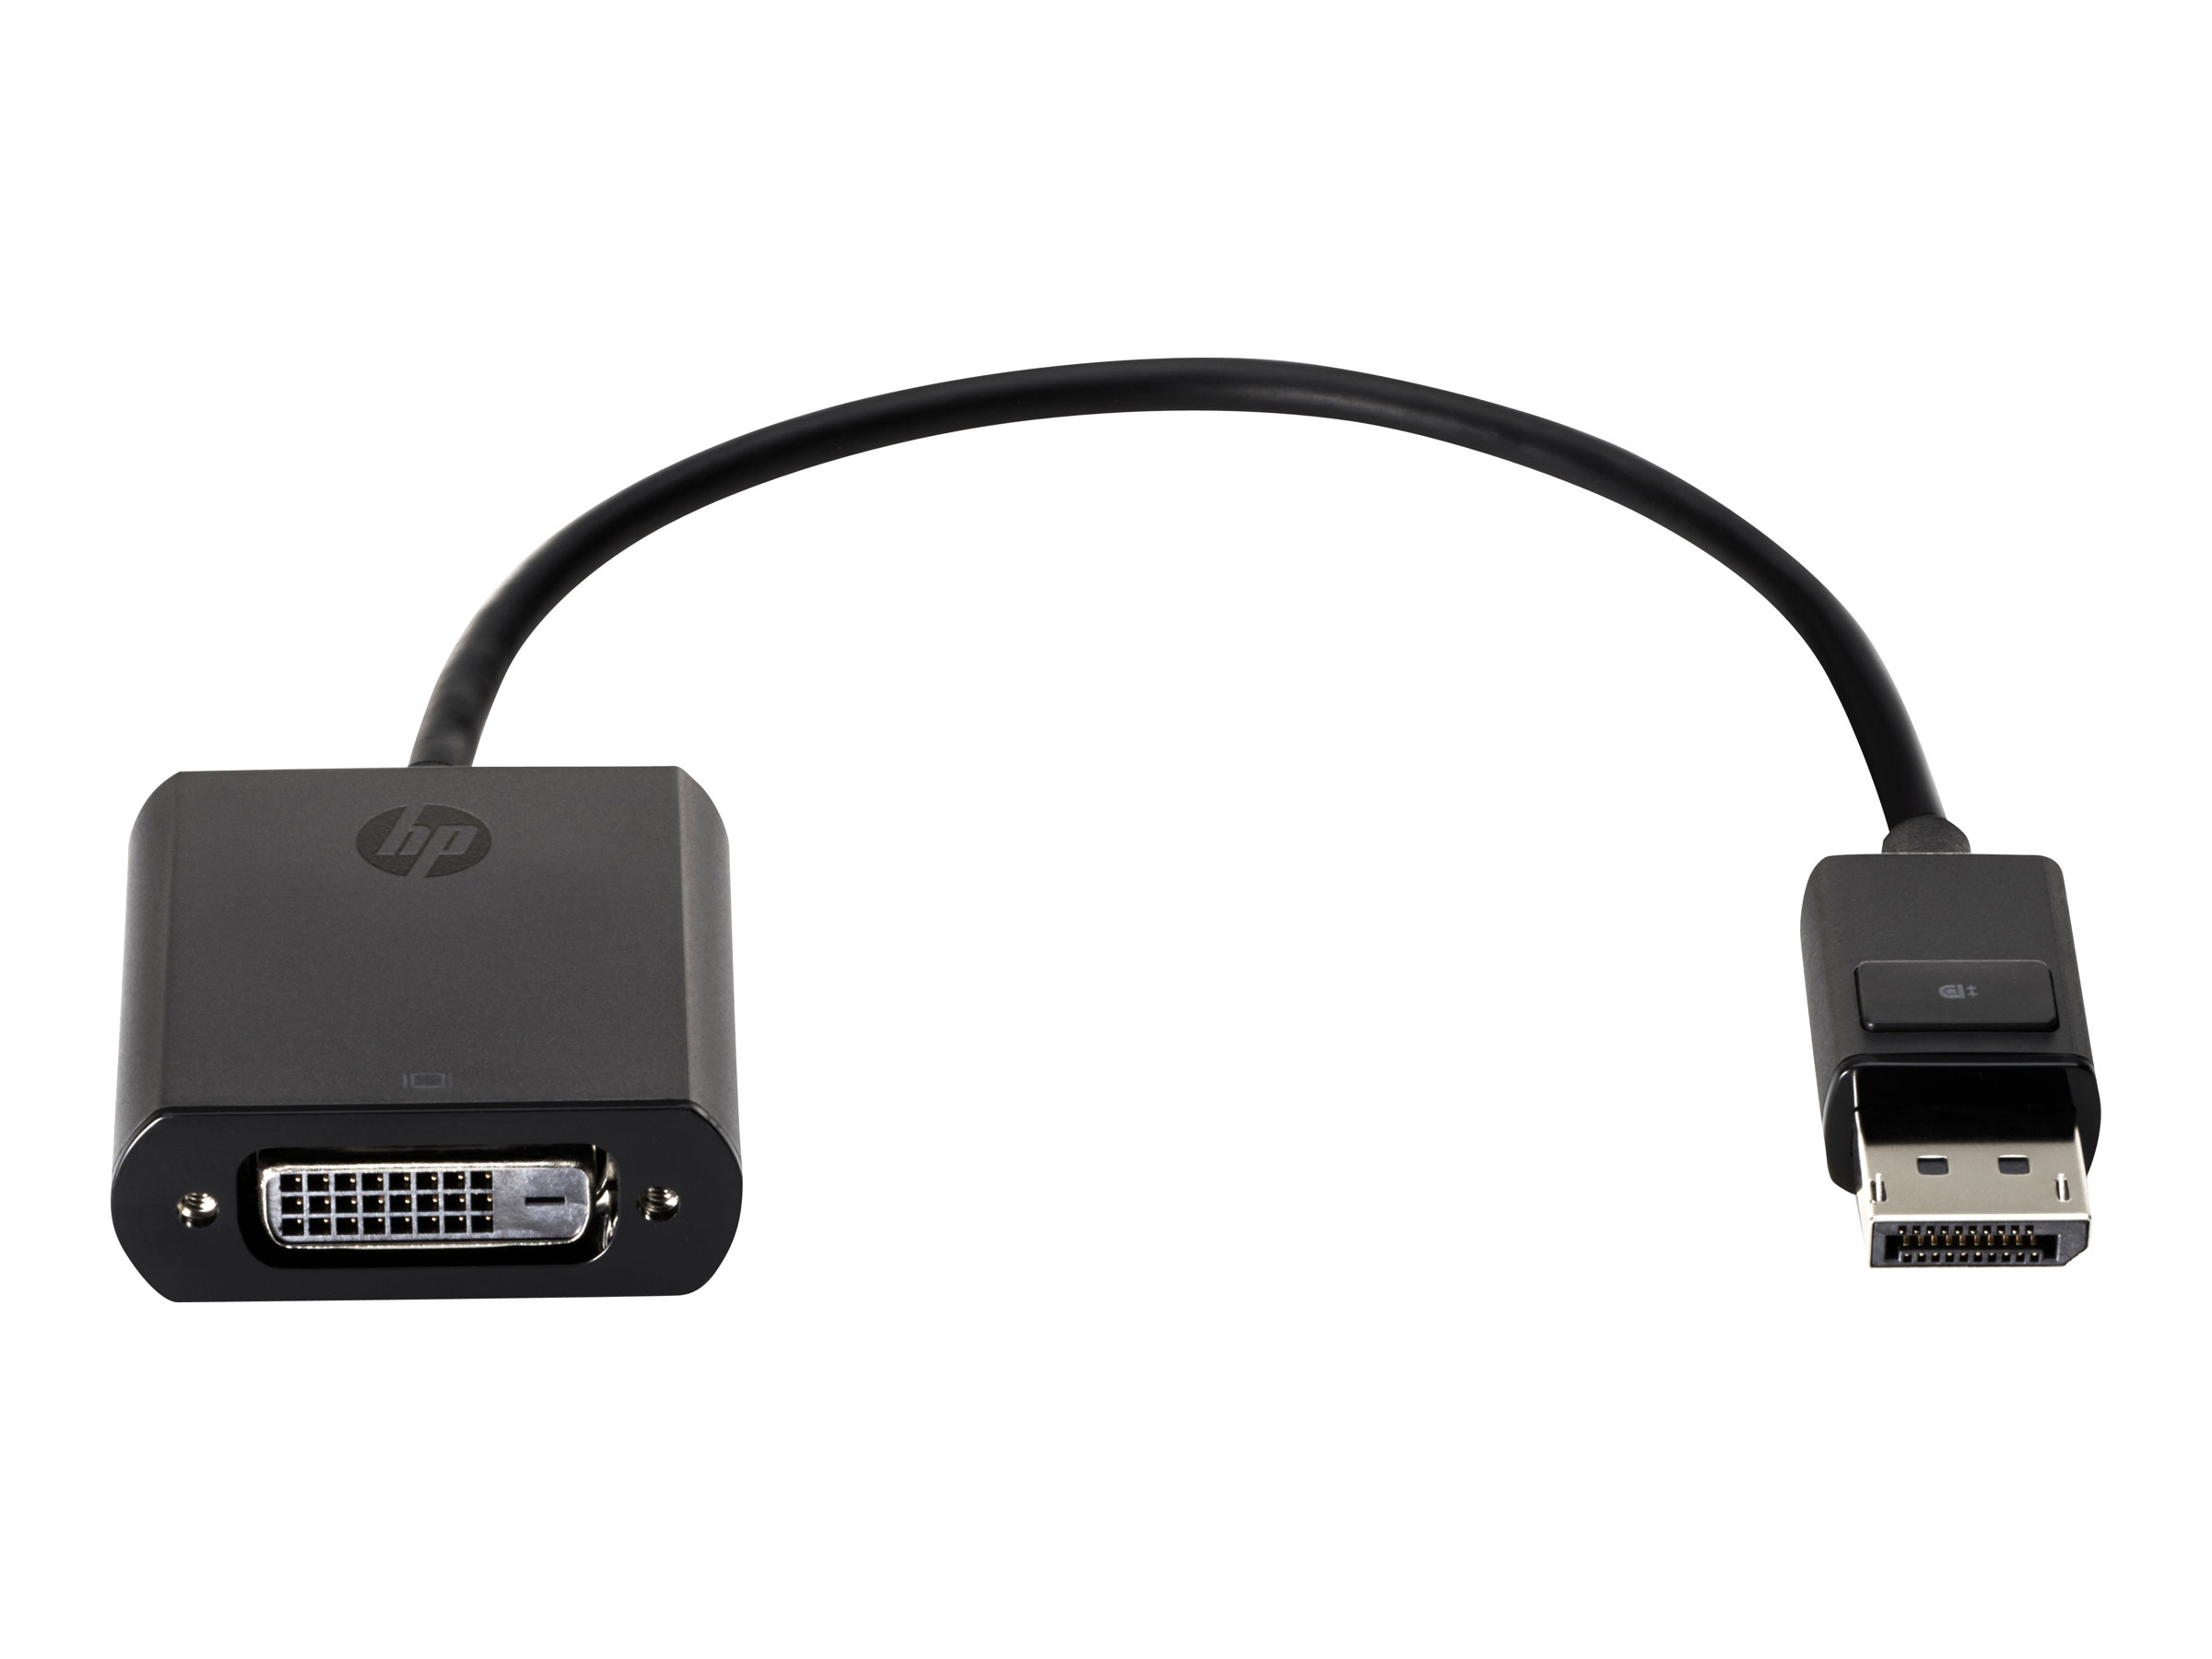 HP Display Port to DVI SL Adapter (F7W96AA)